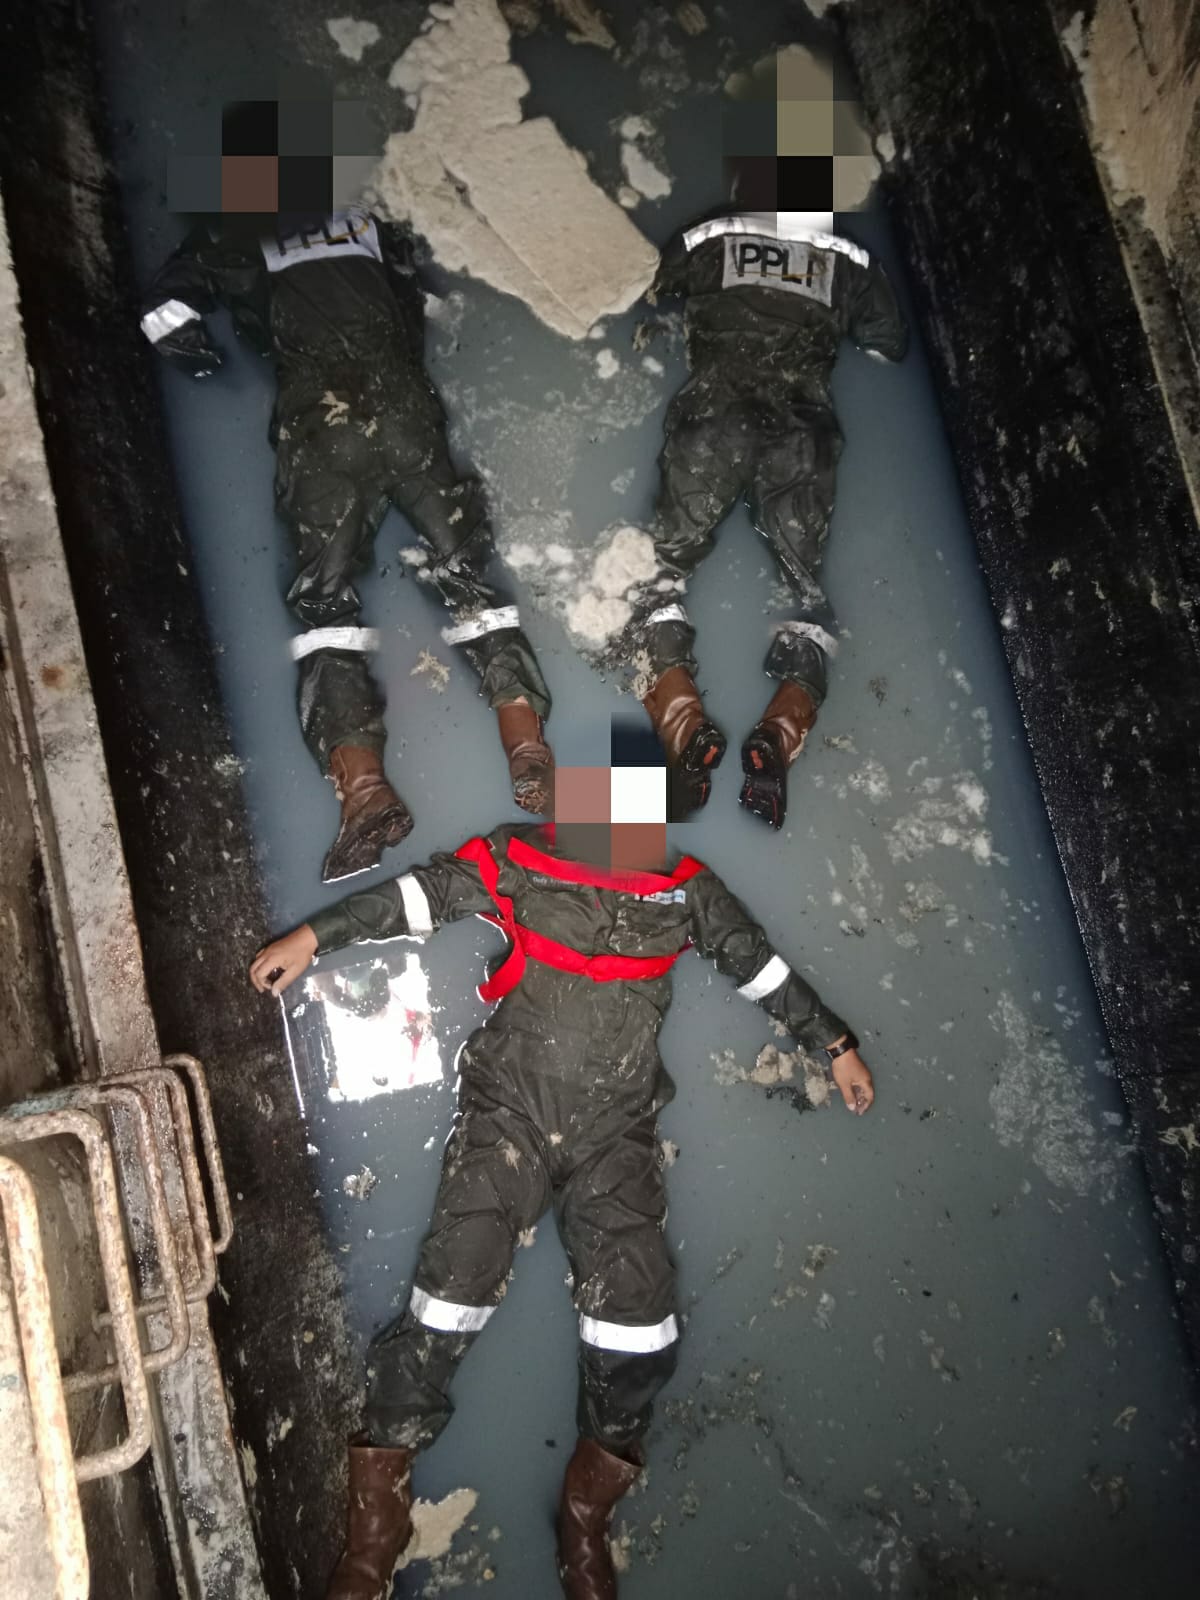 Tiga Karyawan PT PPLI Terjatuh ke Dalam Kontainer Limbah